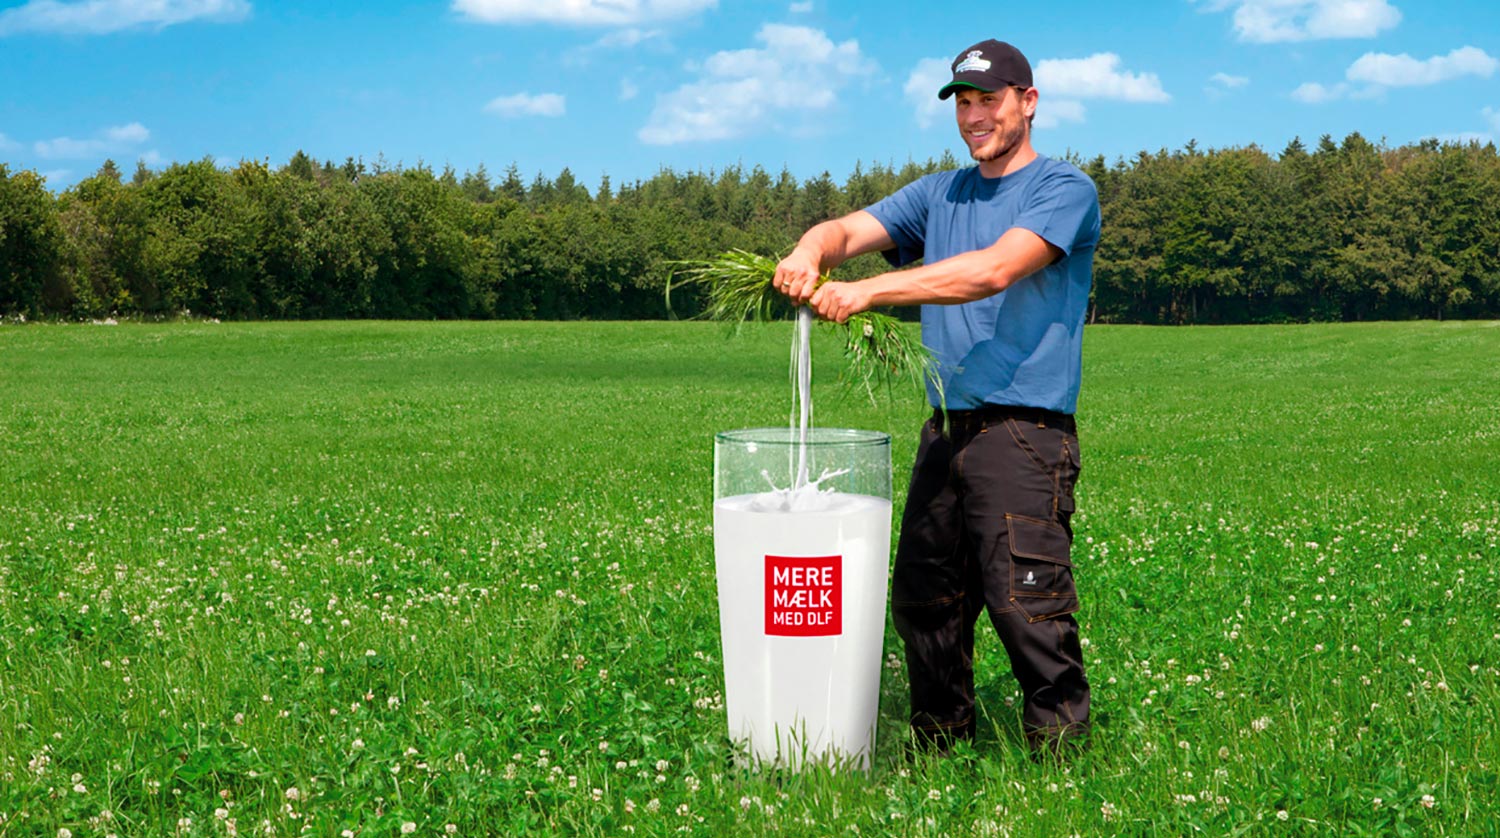 DLF Mere mælk billedbehandling efter